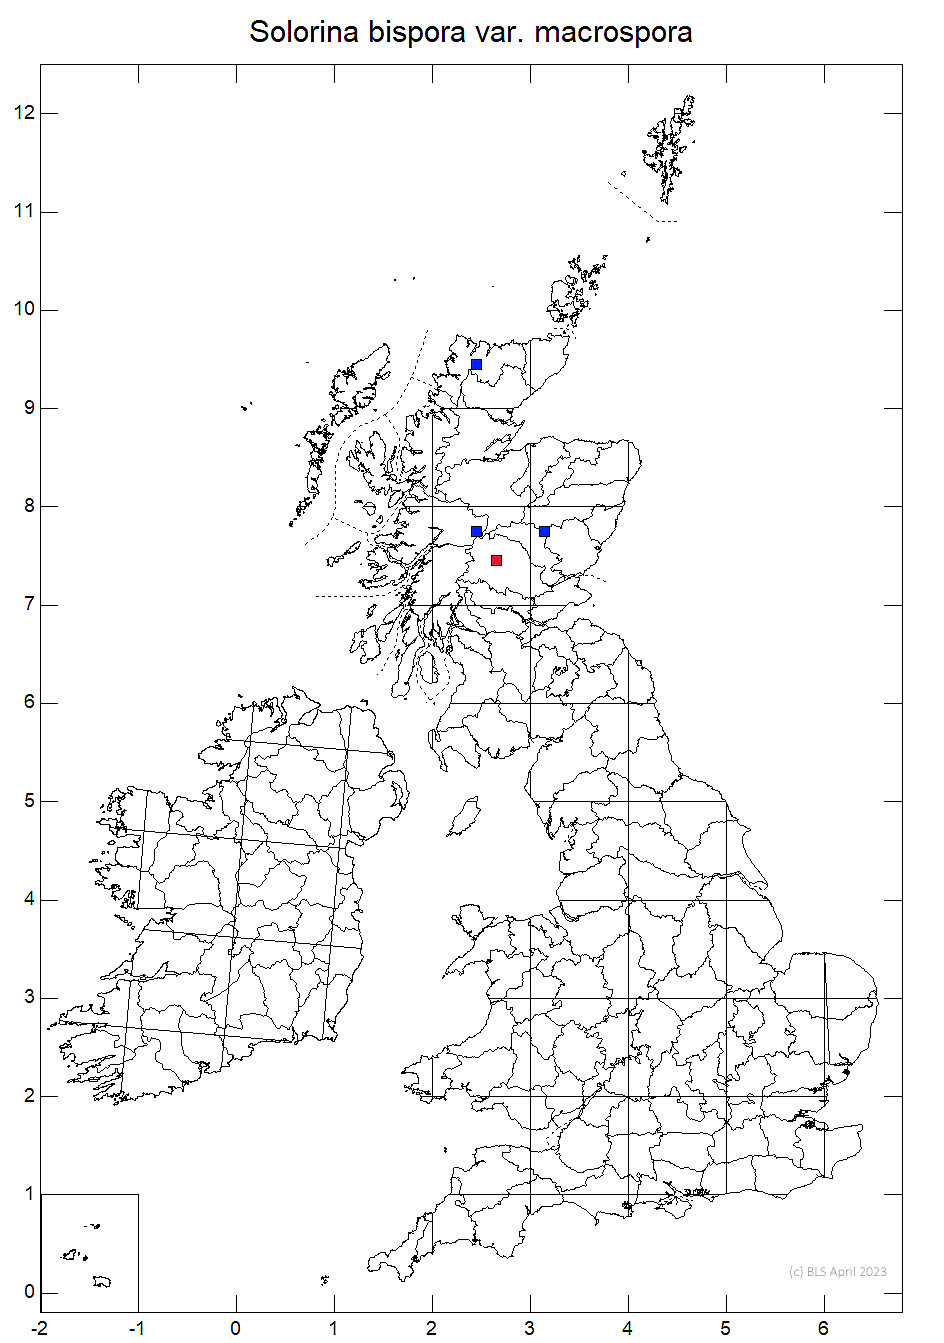 Solorina bispora var. macrospora 10km sq ditribution map